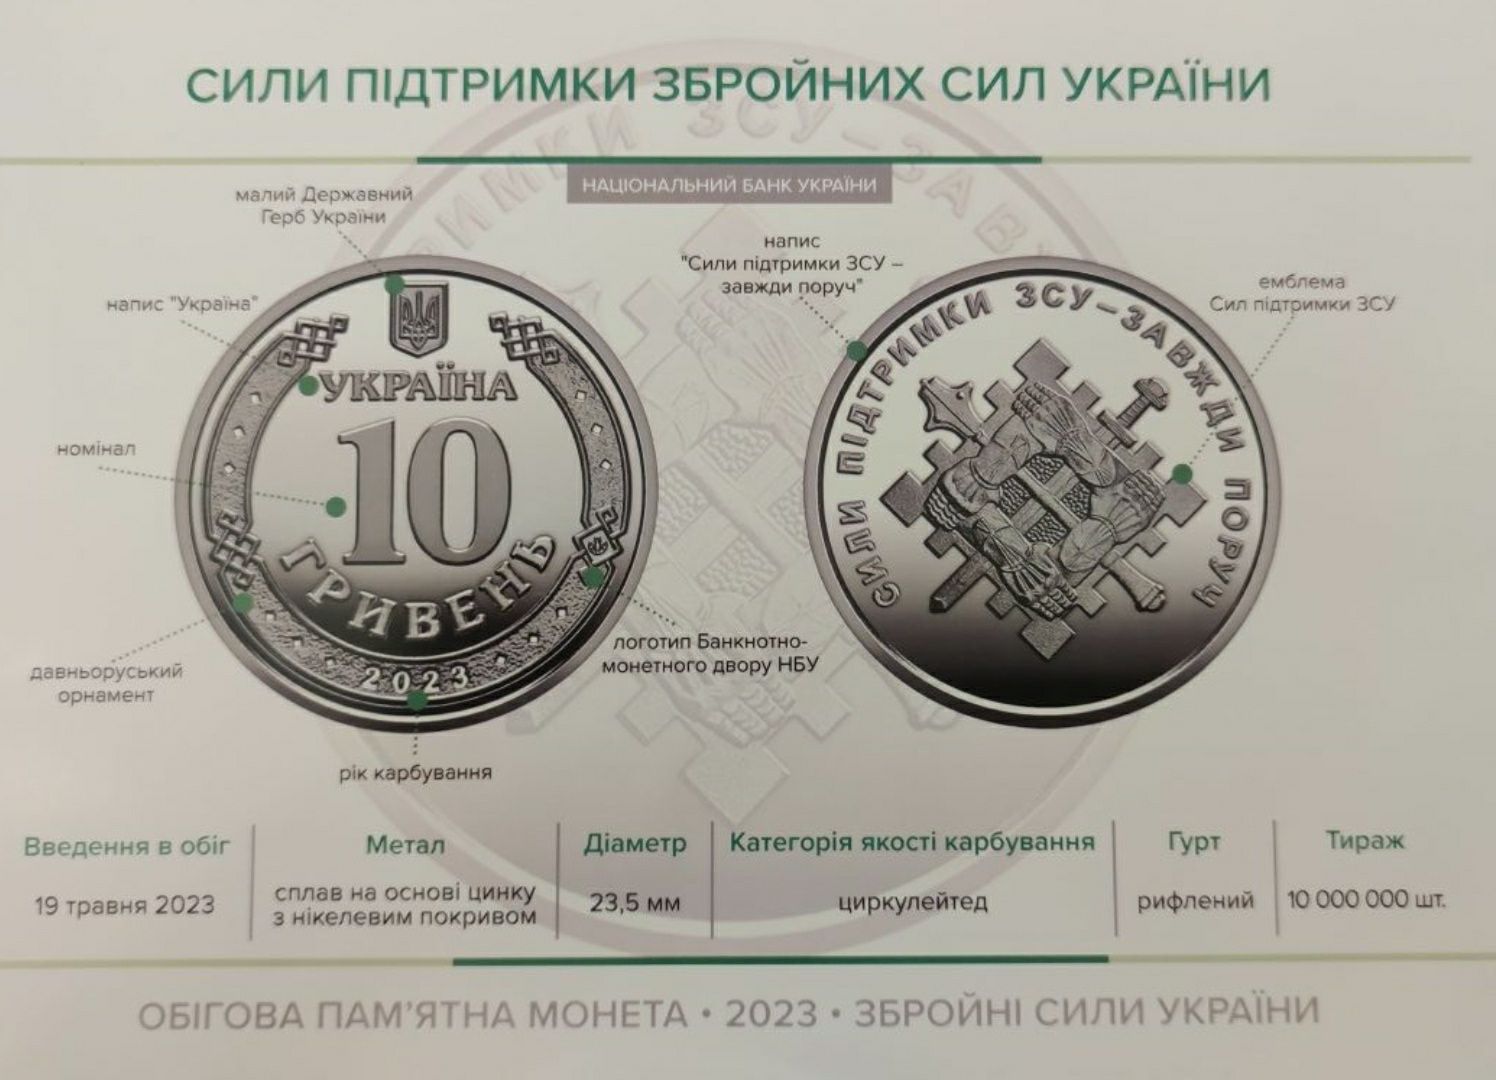 "Сили підтримки Збройних сил України" 10грн ролл 40 монет